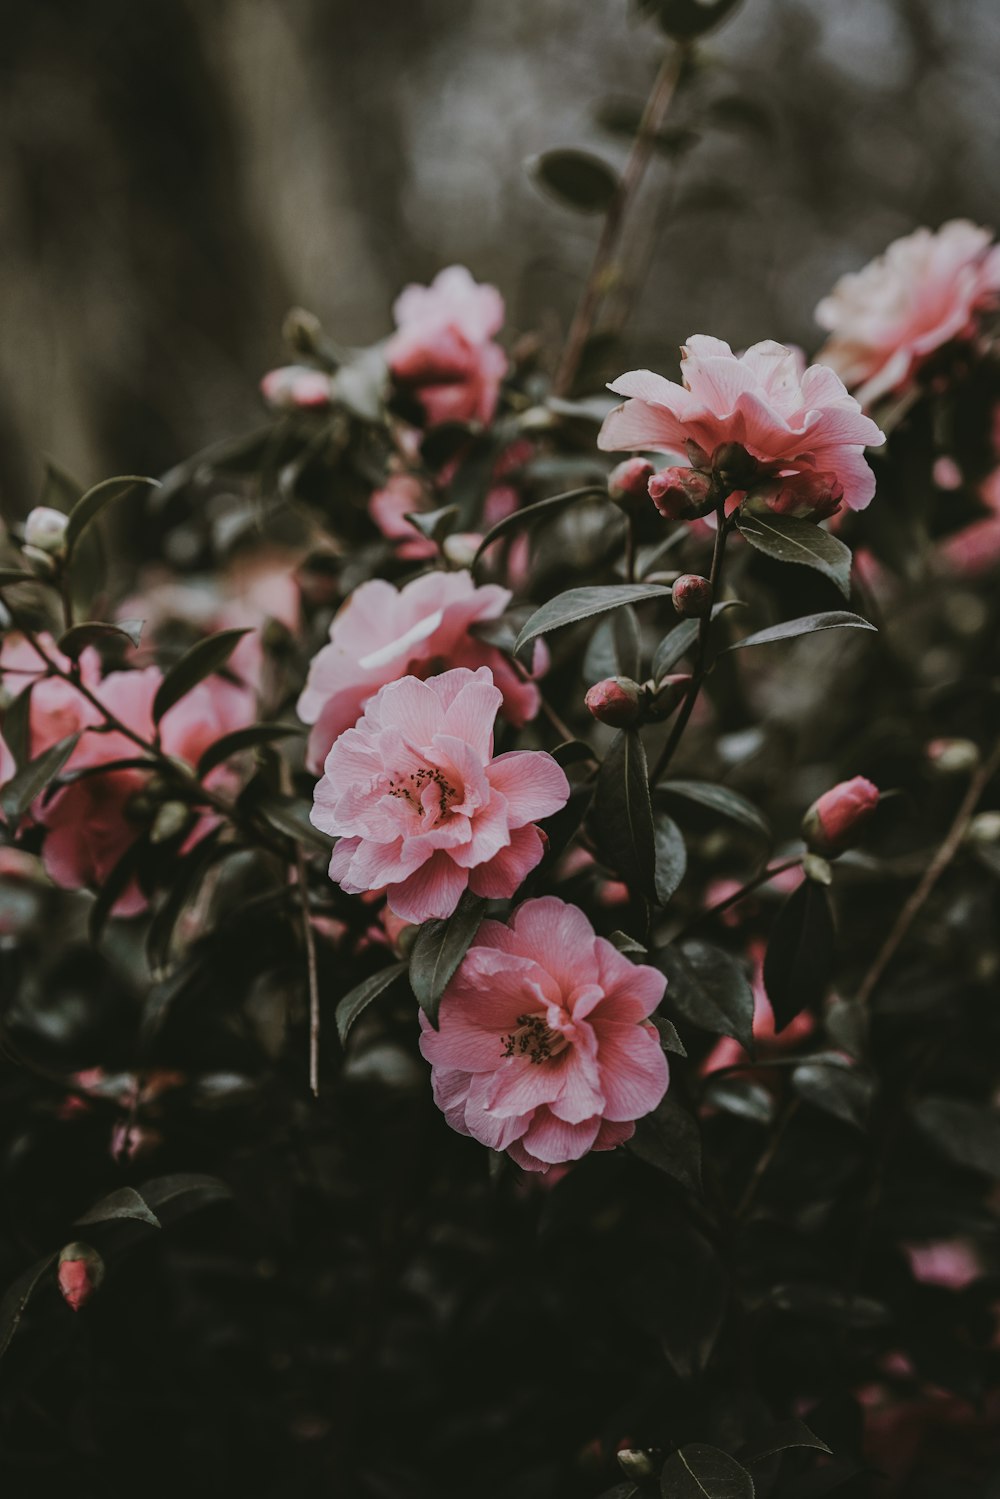 핑크 꽃잎 꽃의 틸트 시프트 사진